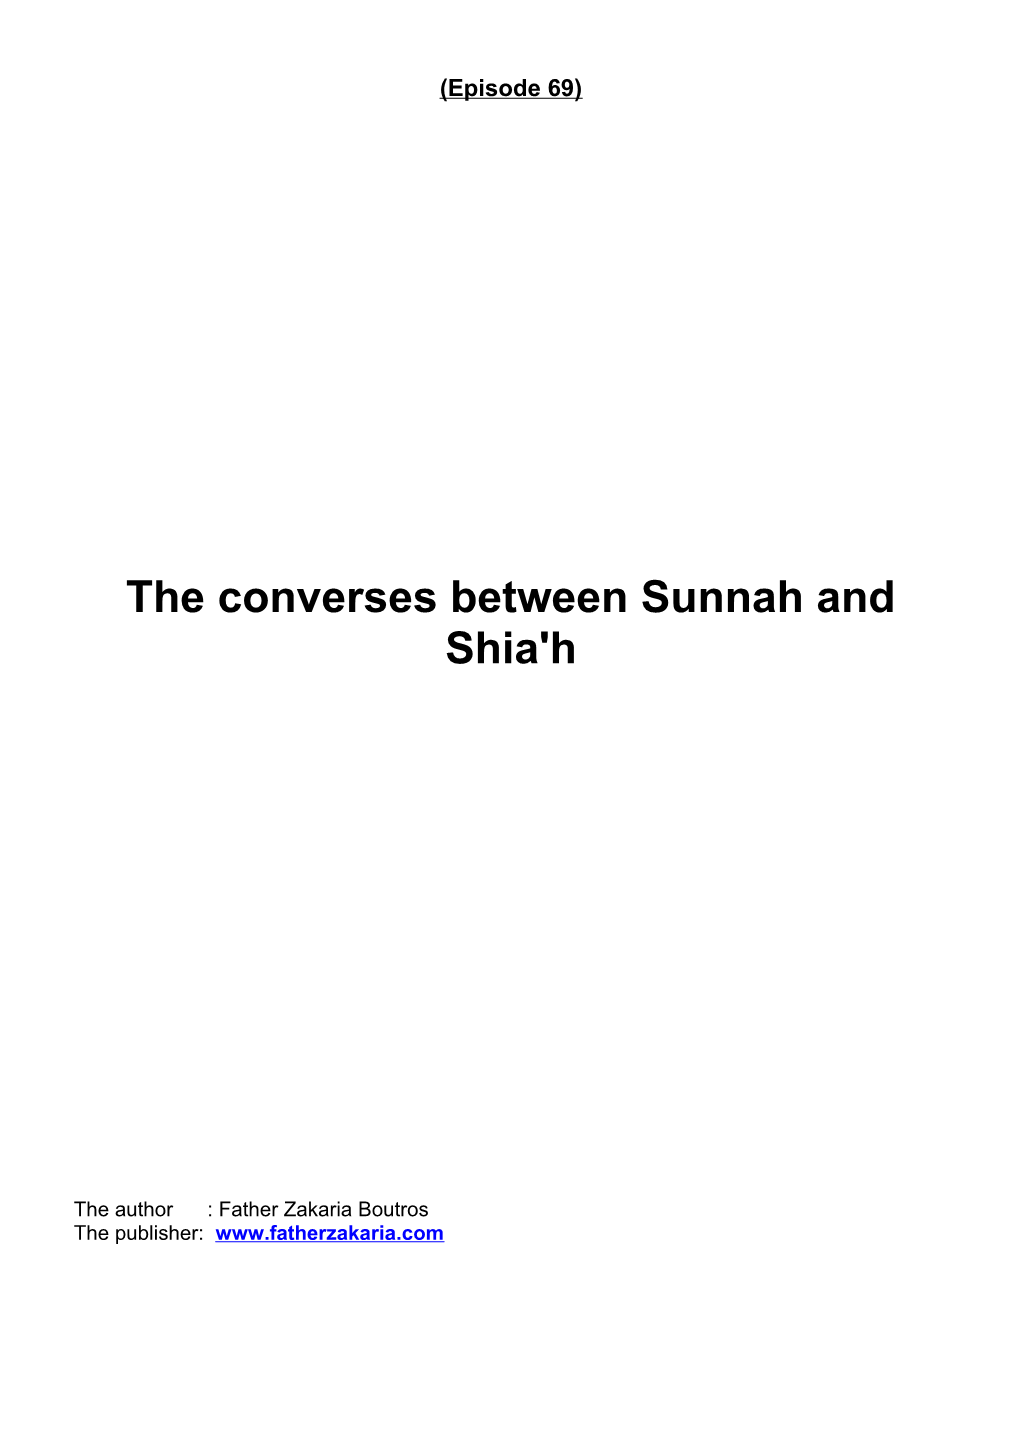 The Converses Between Sunnah and Shia'h